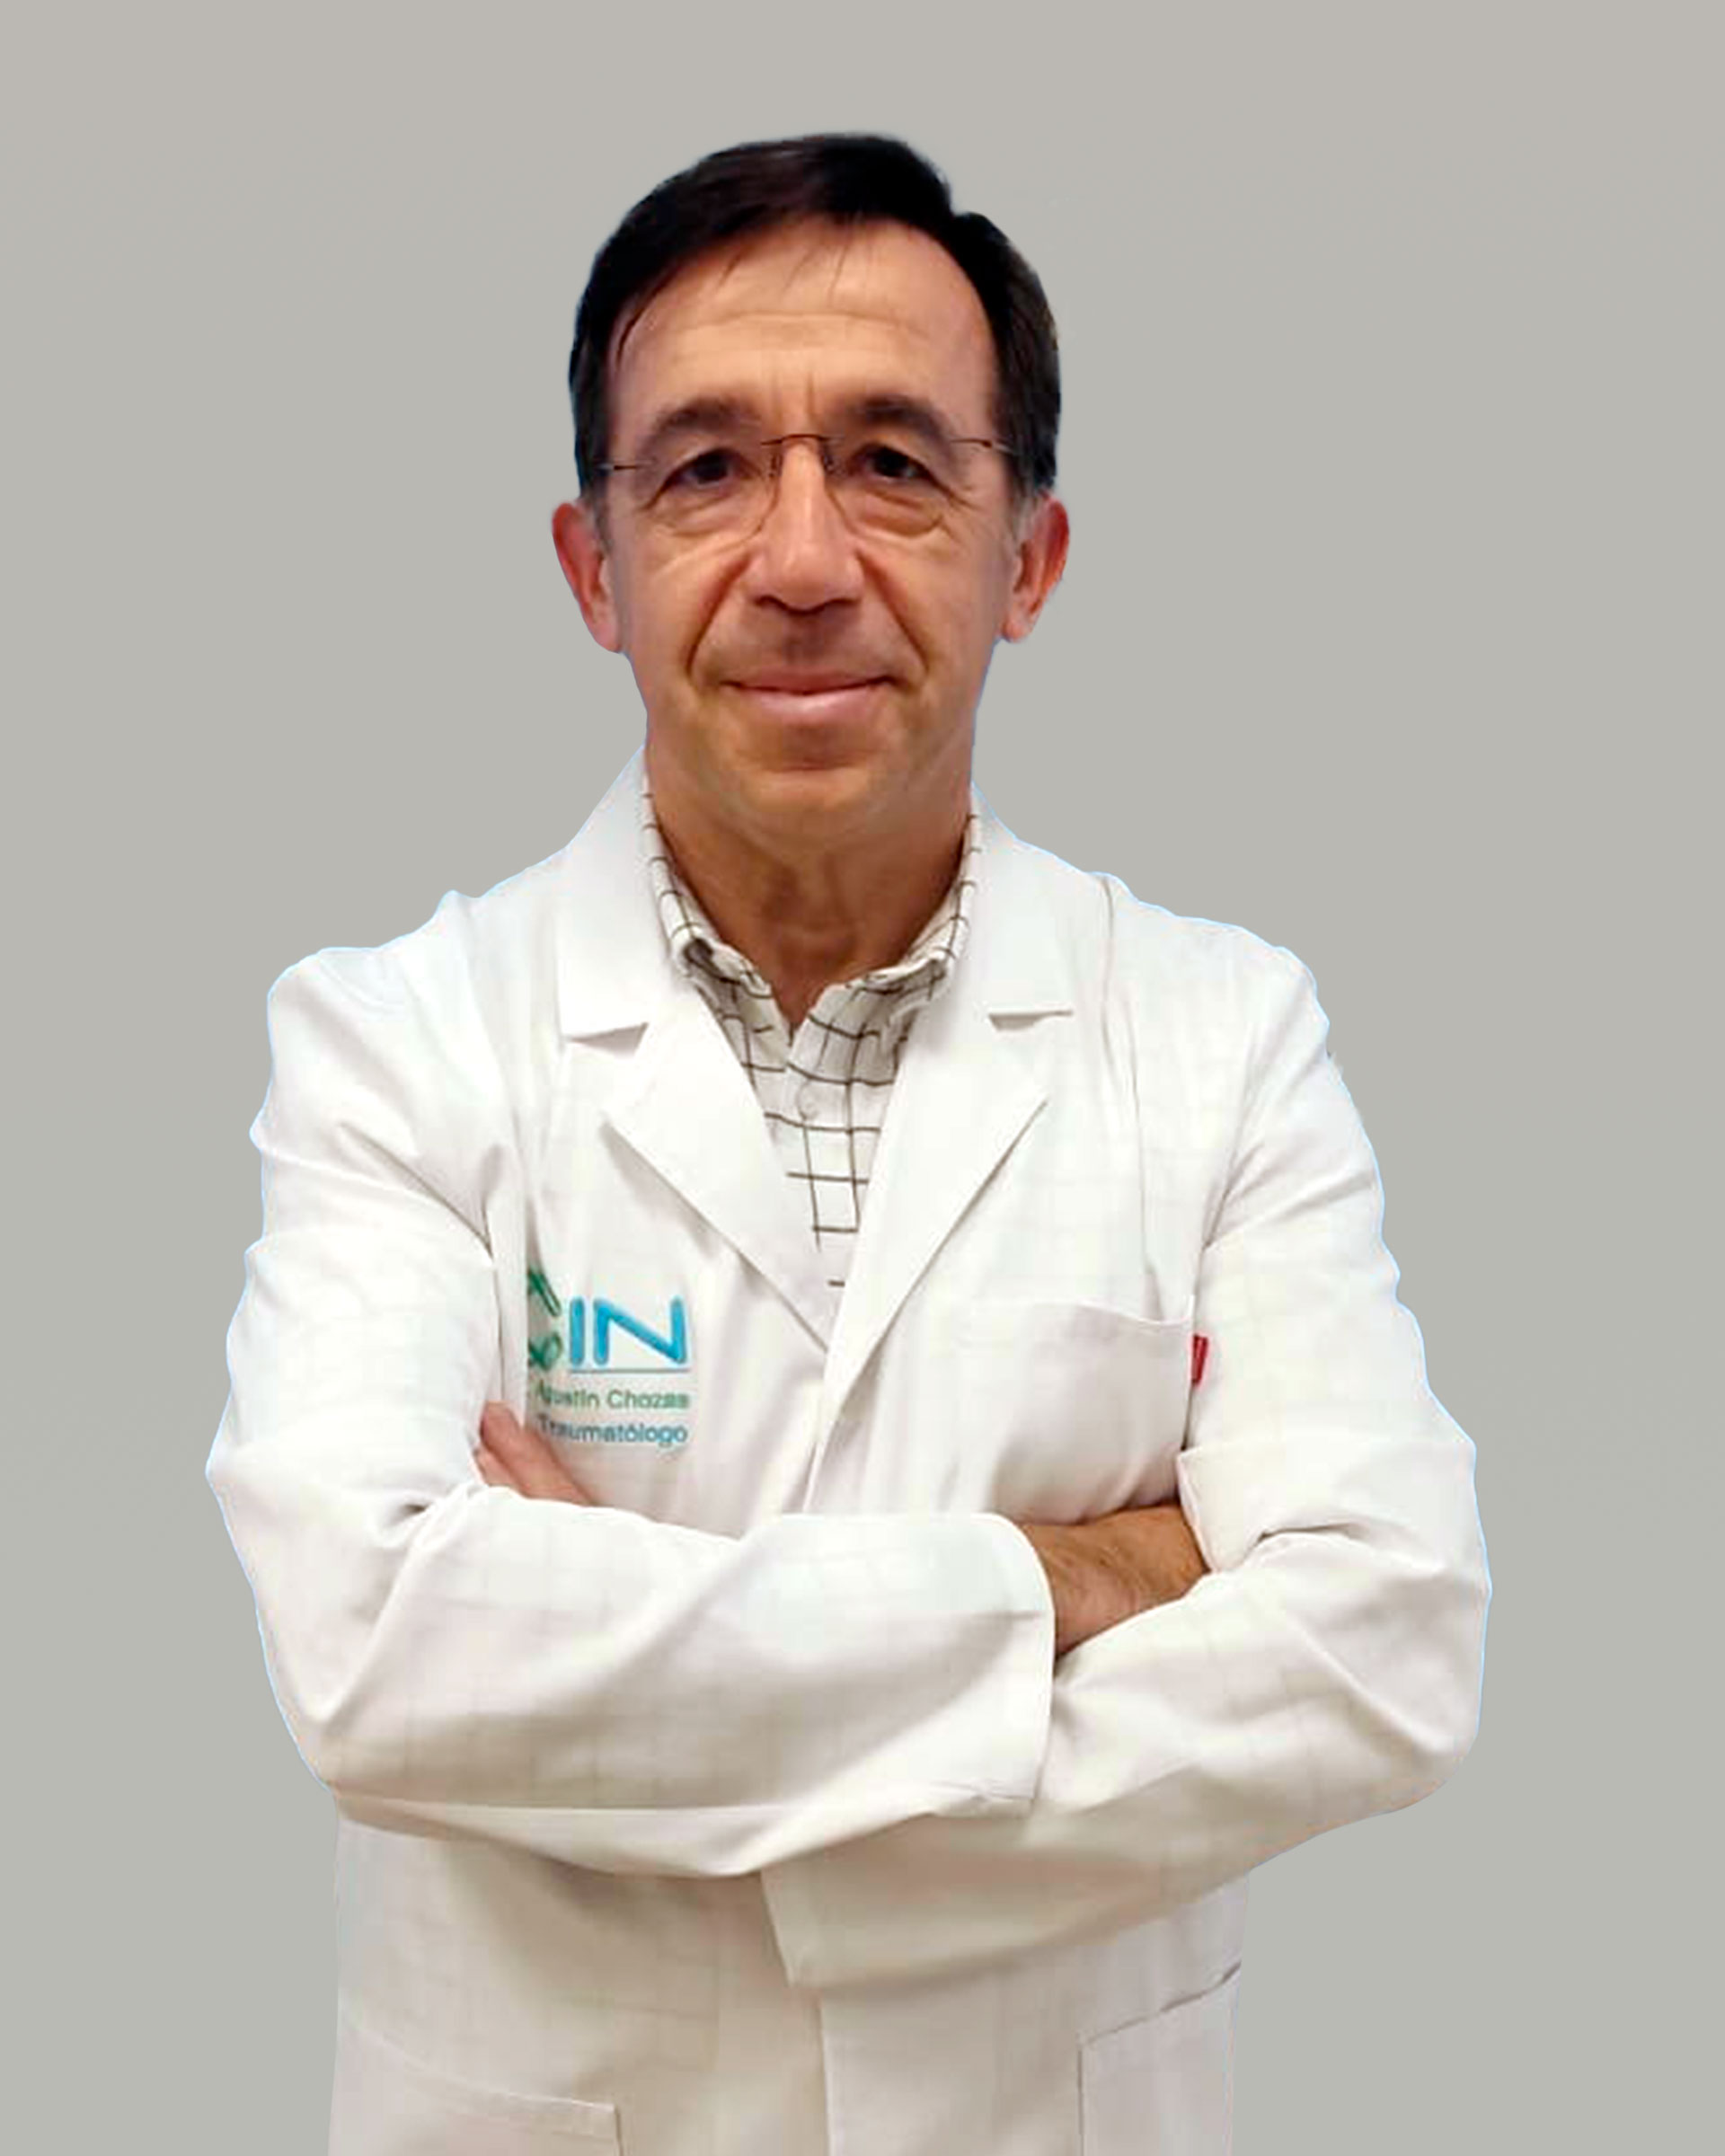 Dr. Agustín Chozas